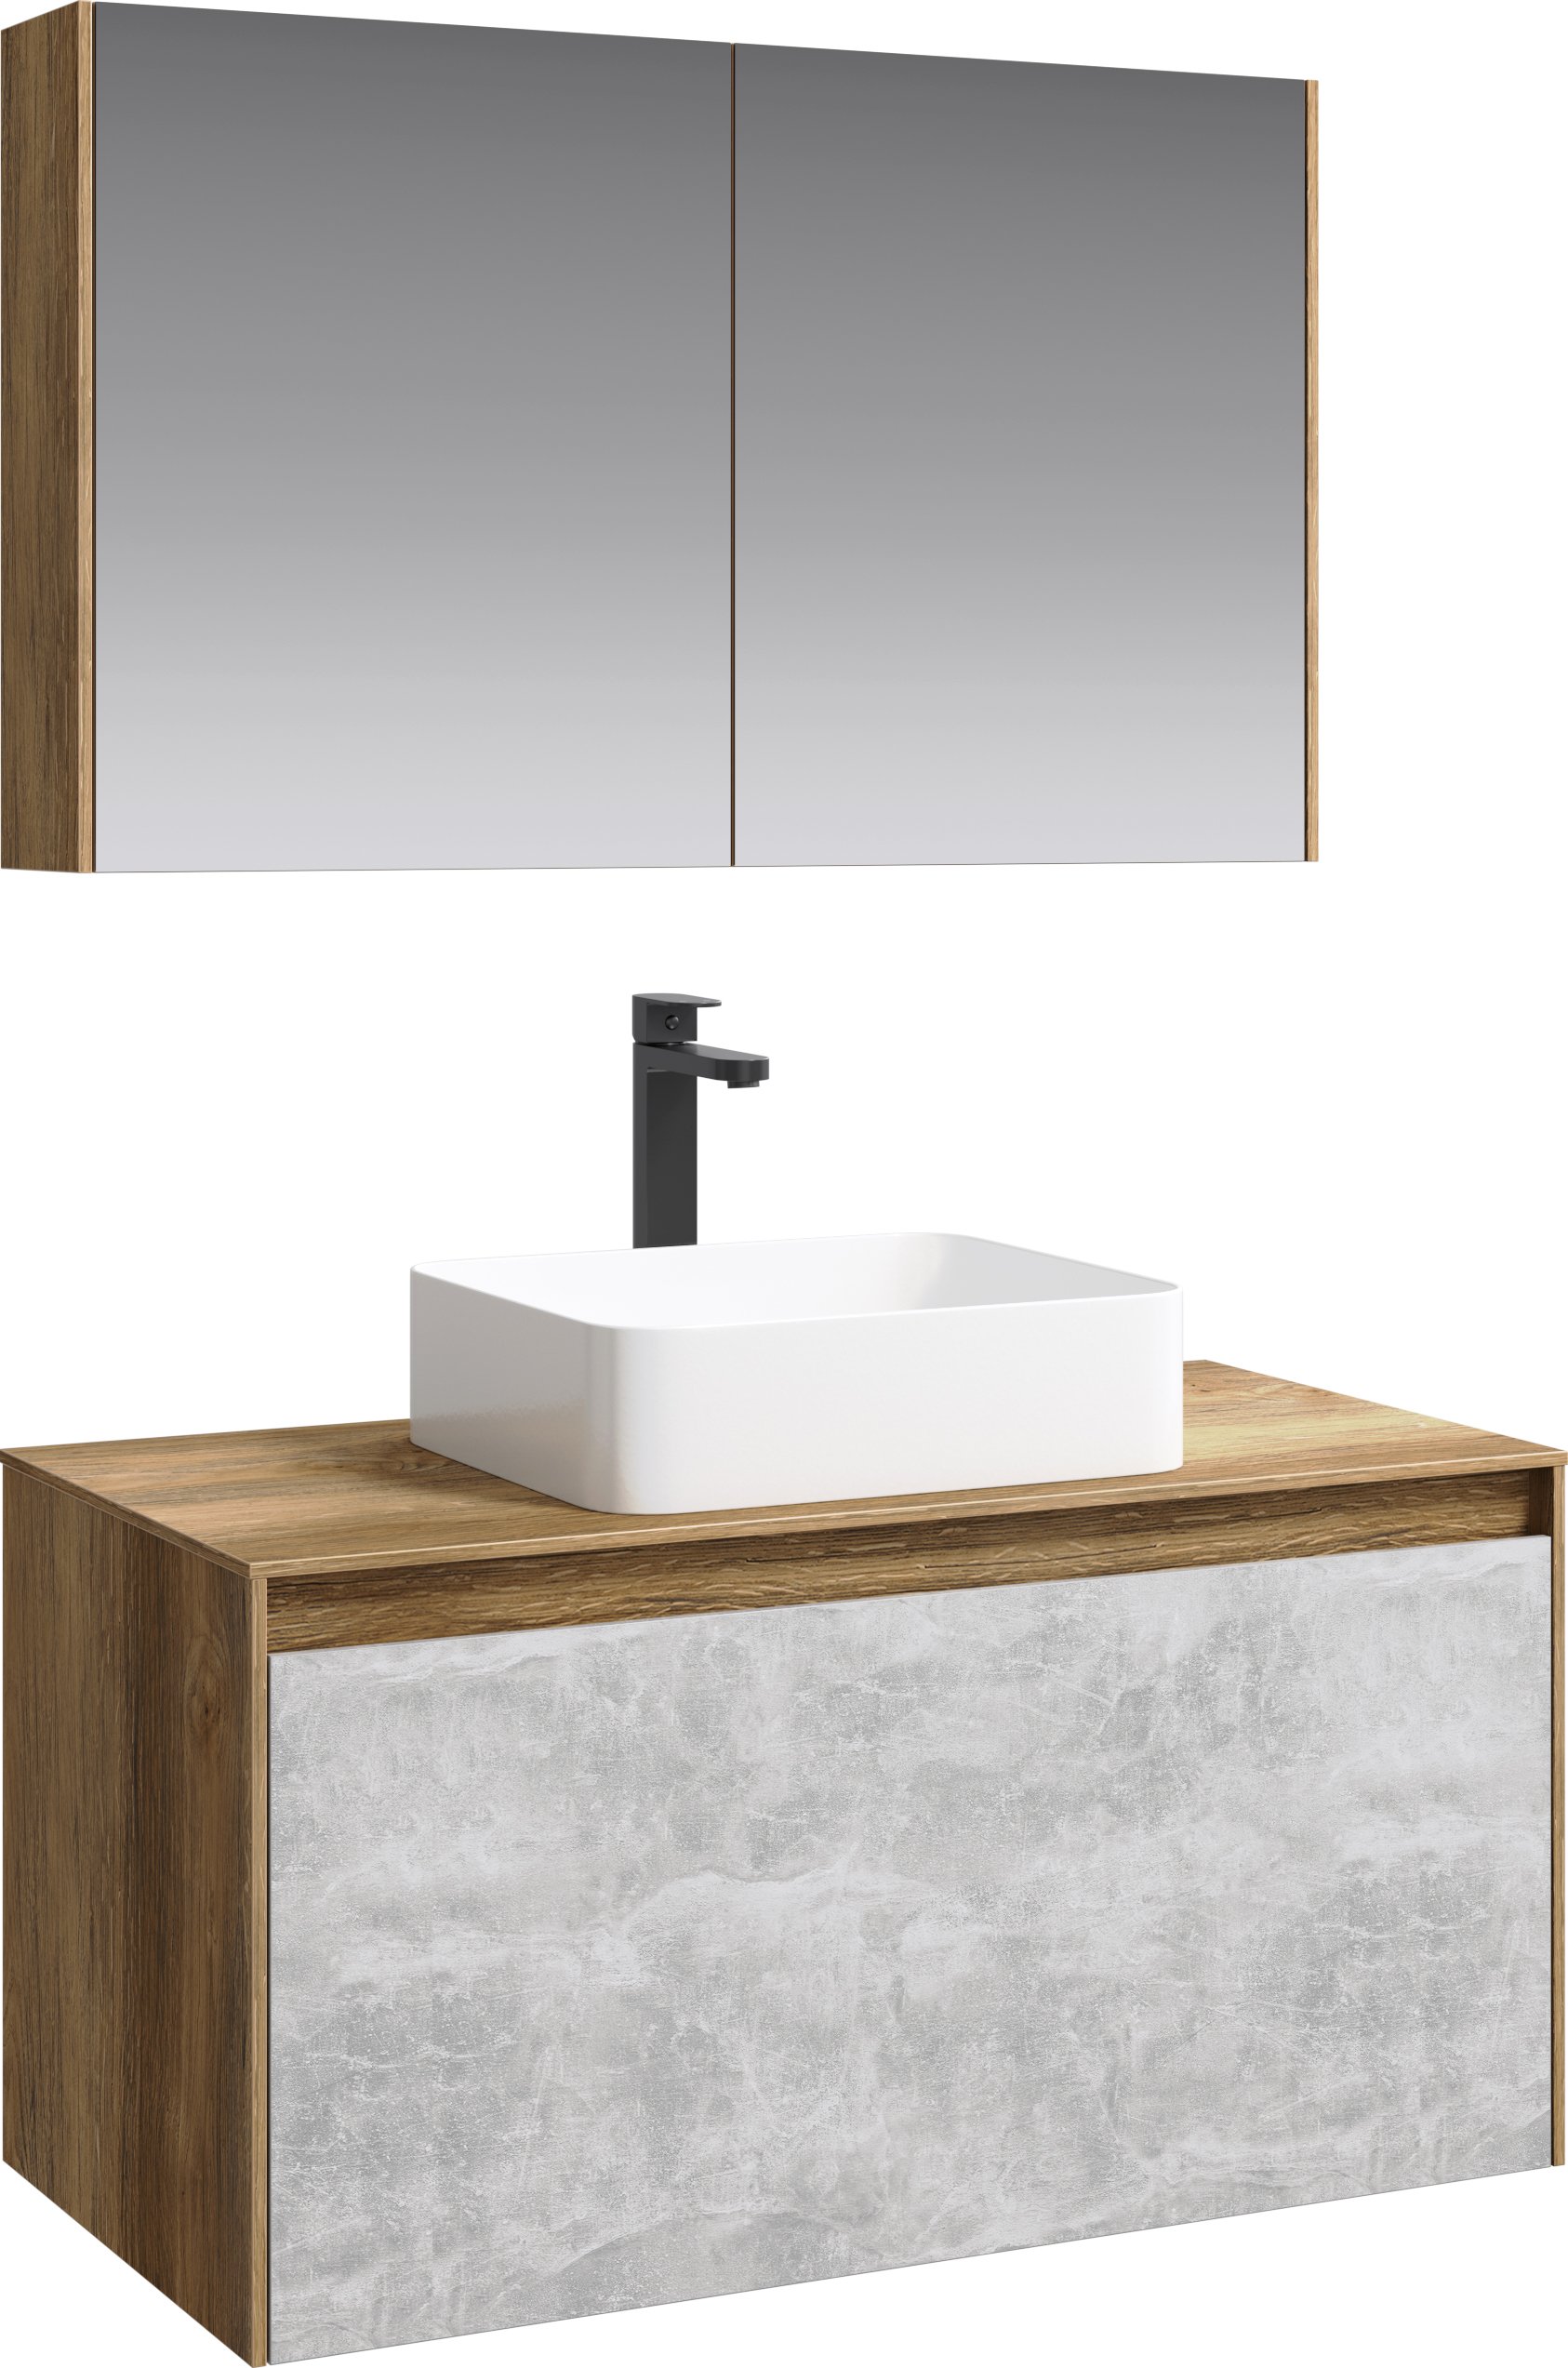 Мебель для ванной Aqwella 5 stars Mobi 100 дуб балтийский, бетон светлый, серый  - купить со скидкой